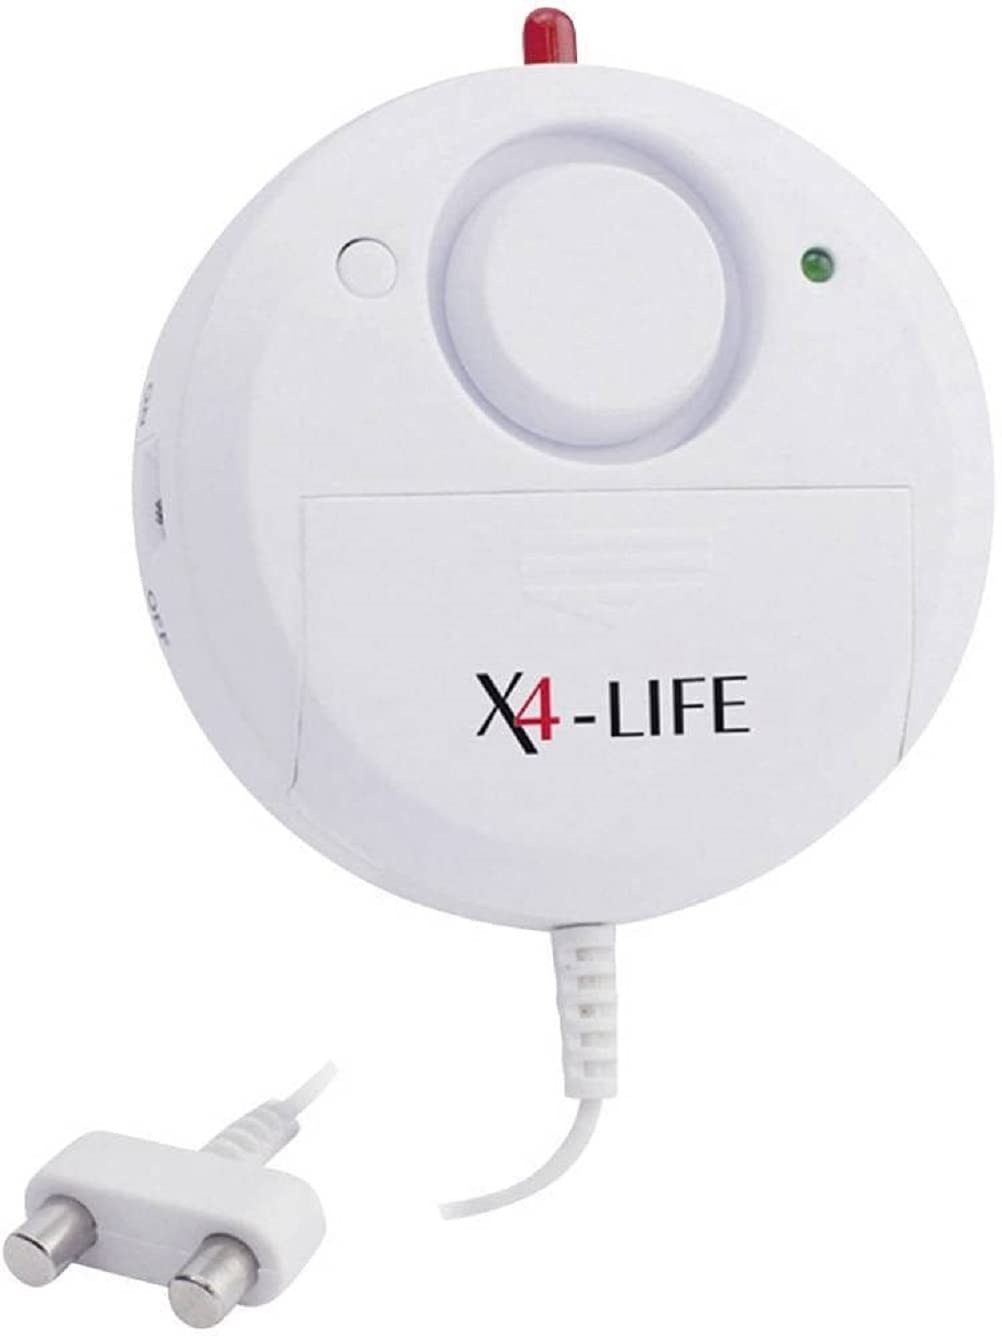 X4-LIFE Wassermelder 120 dB - Wasseralarm - Bewährter Schutz vor Wasserschäden - Inklusive Batterien